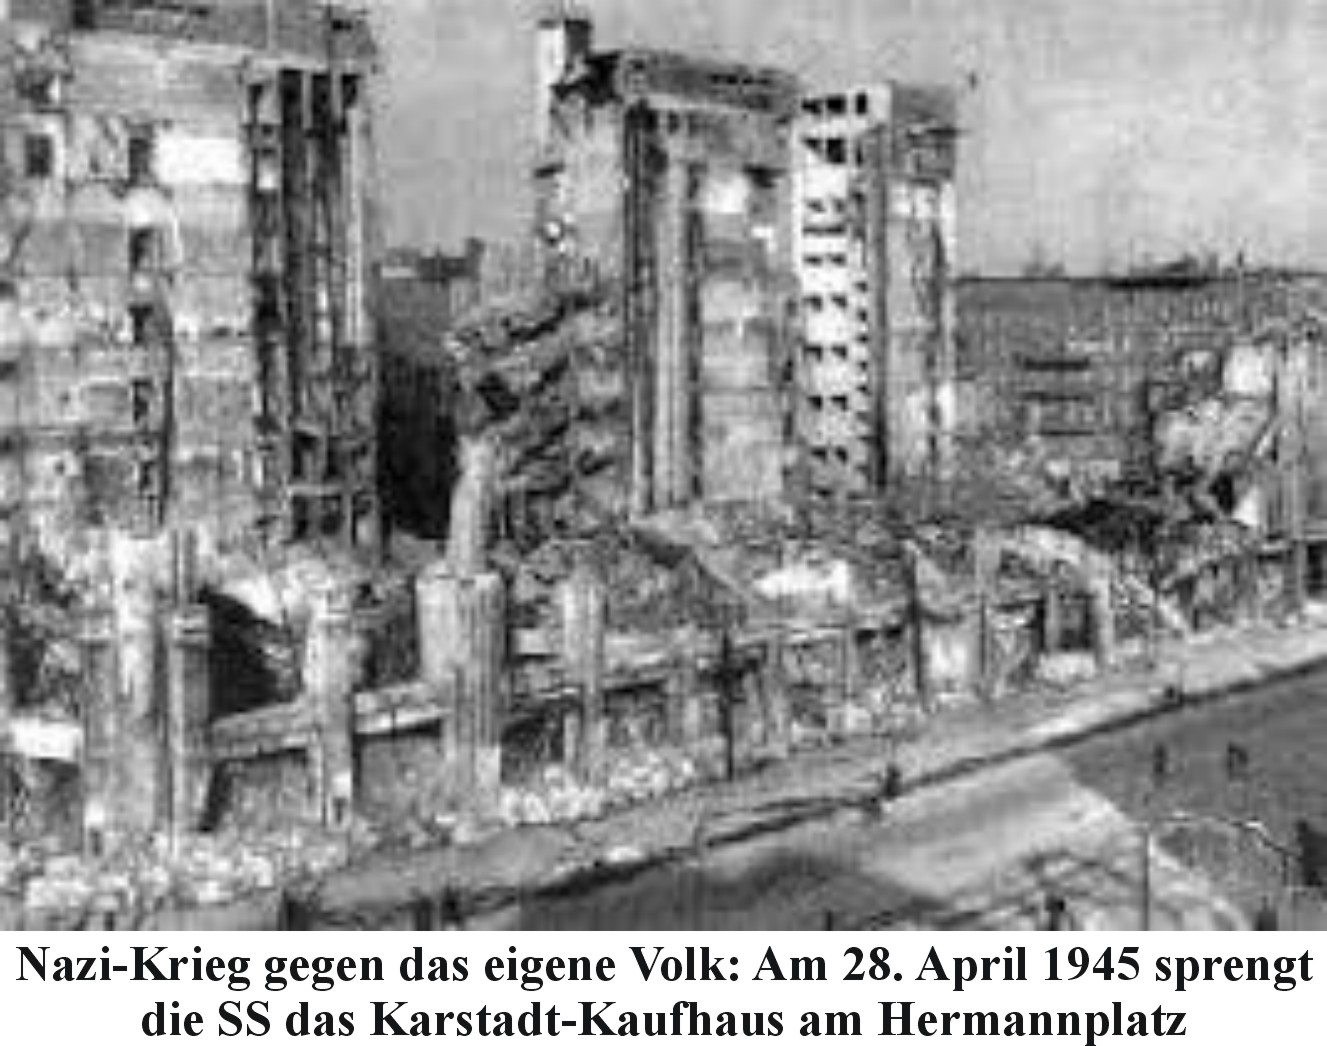 Nazi-Krieg gegen das eigene Volk: Am 28. April 1945 sprengt die SS das Karstadt-Kaufhaus am Hermannplatz